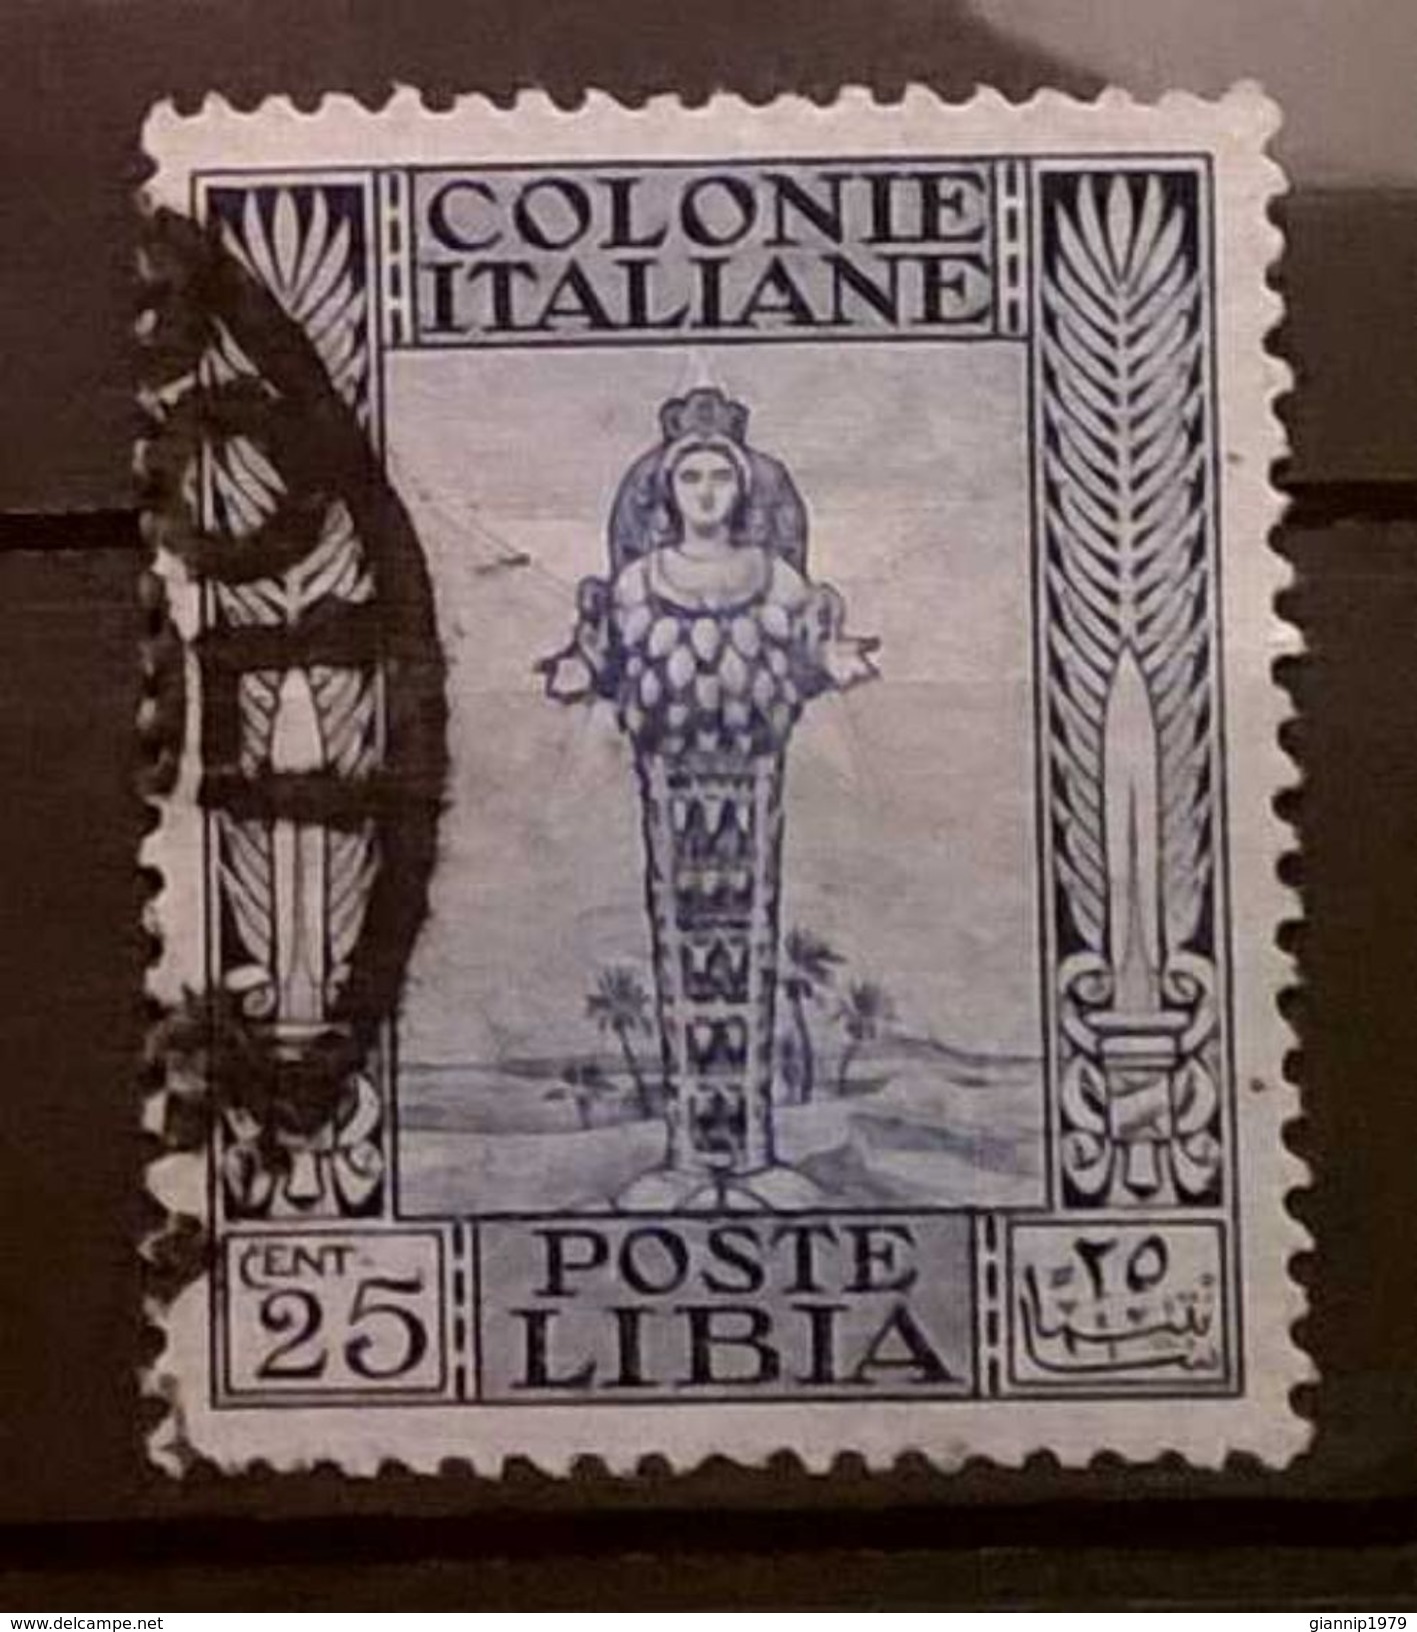 FRANCOBOLLI STAMPS ITALIA ITALY 1921 COLONIA LIBIA SERIE ANTICHE - Libia